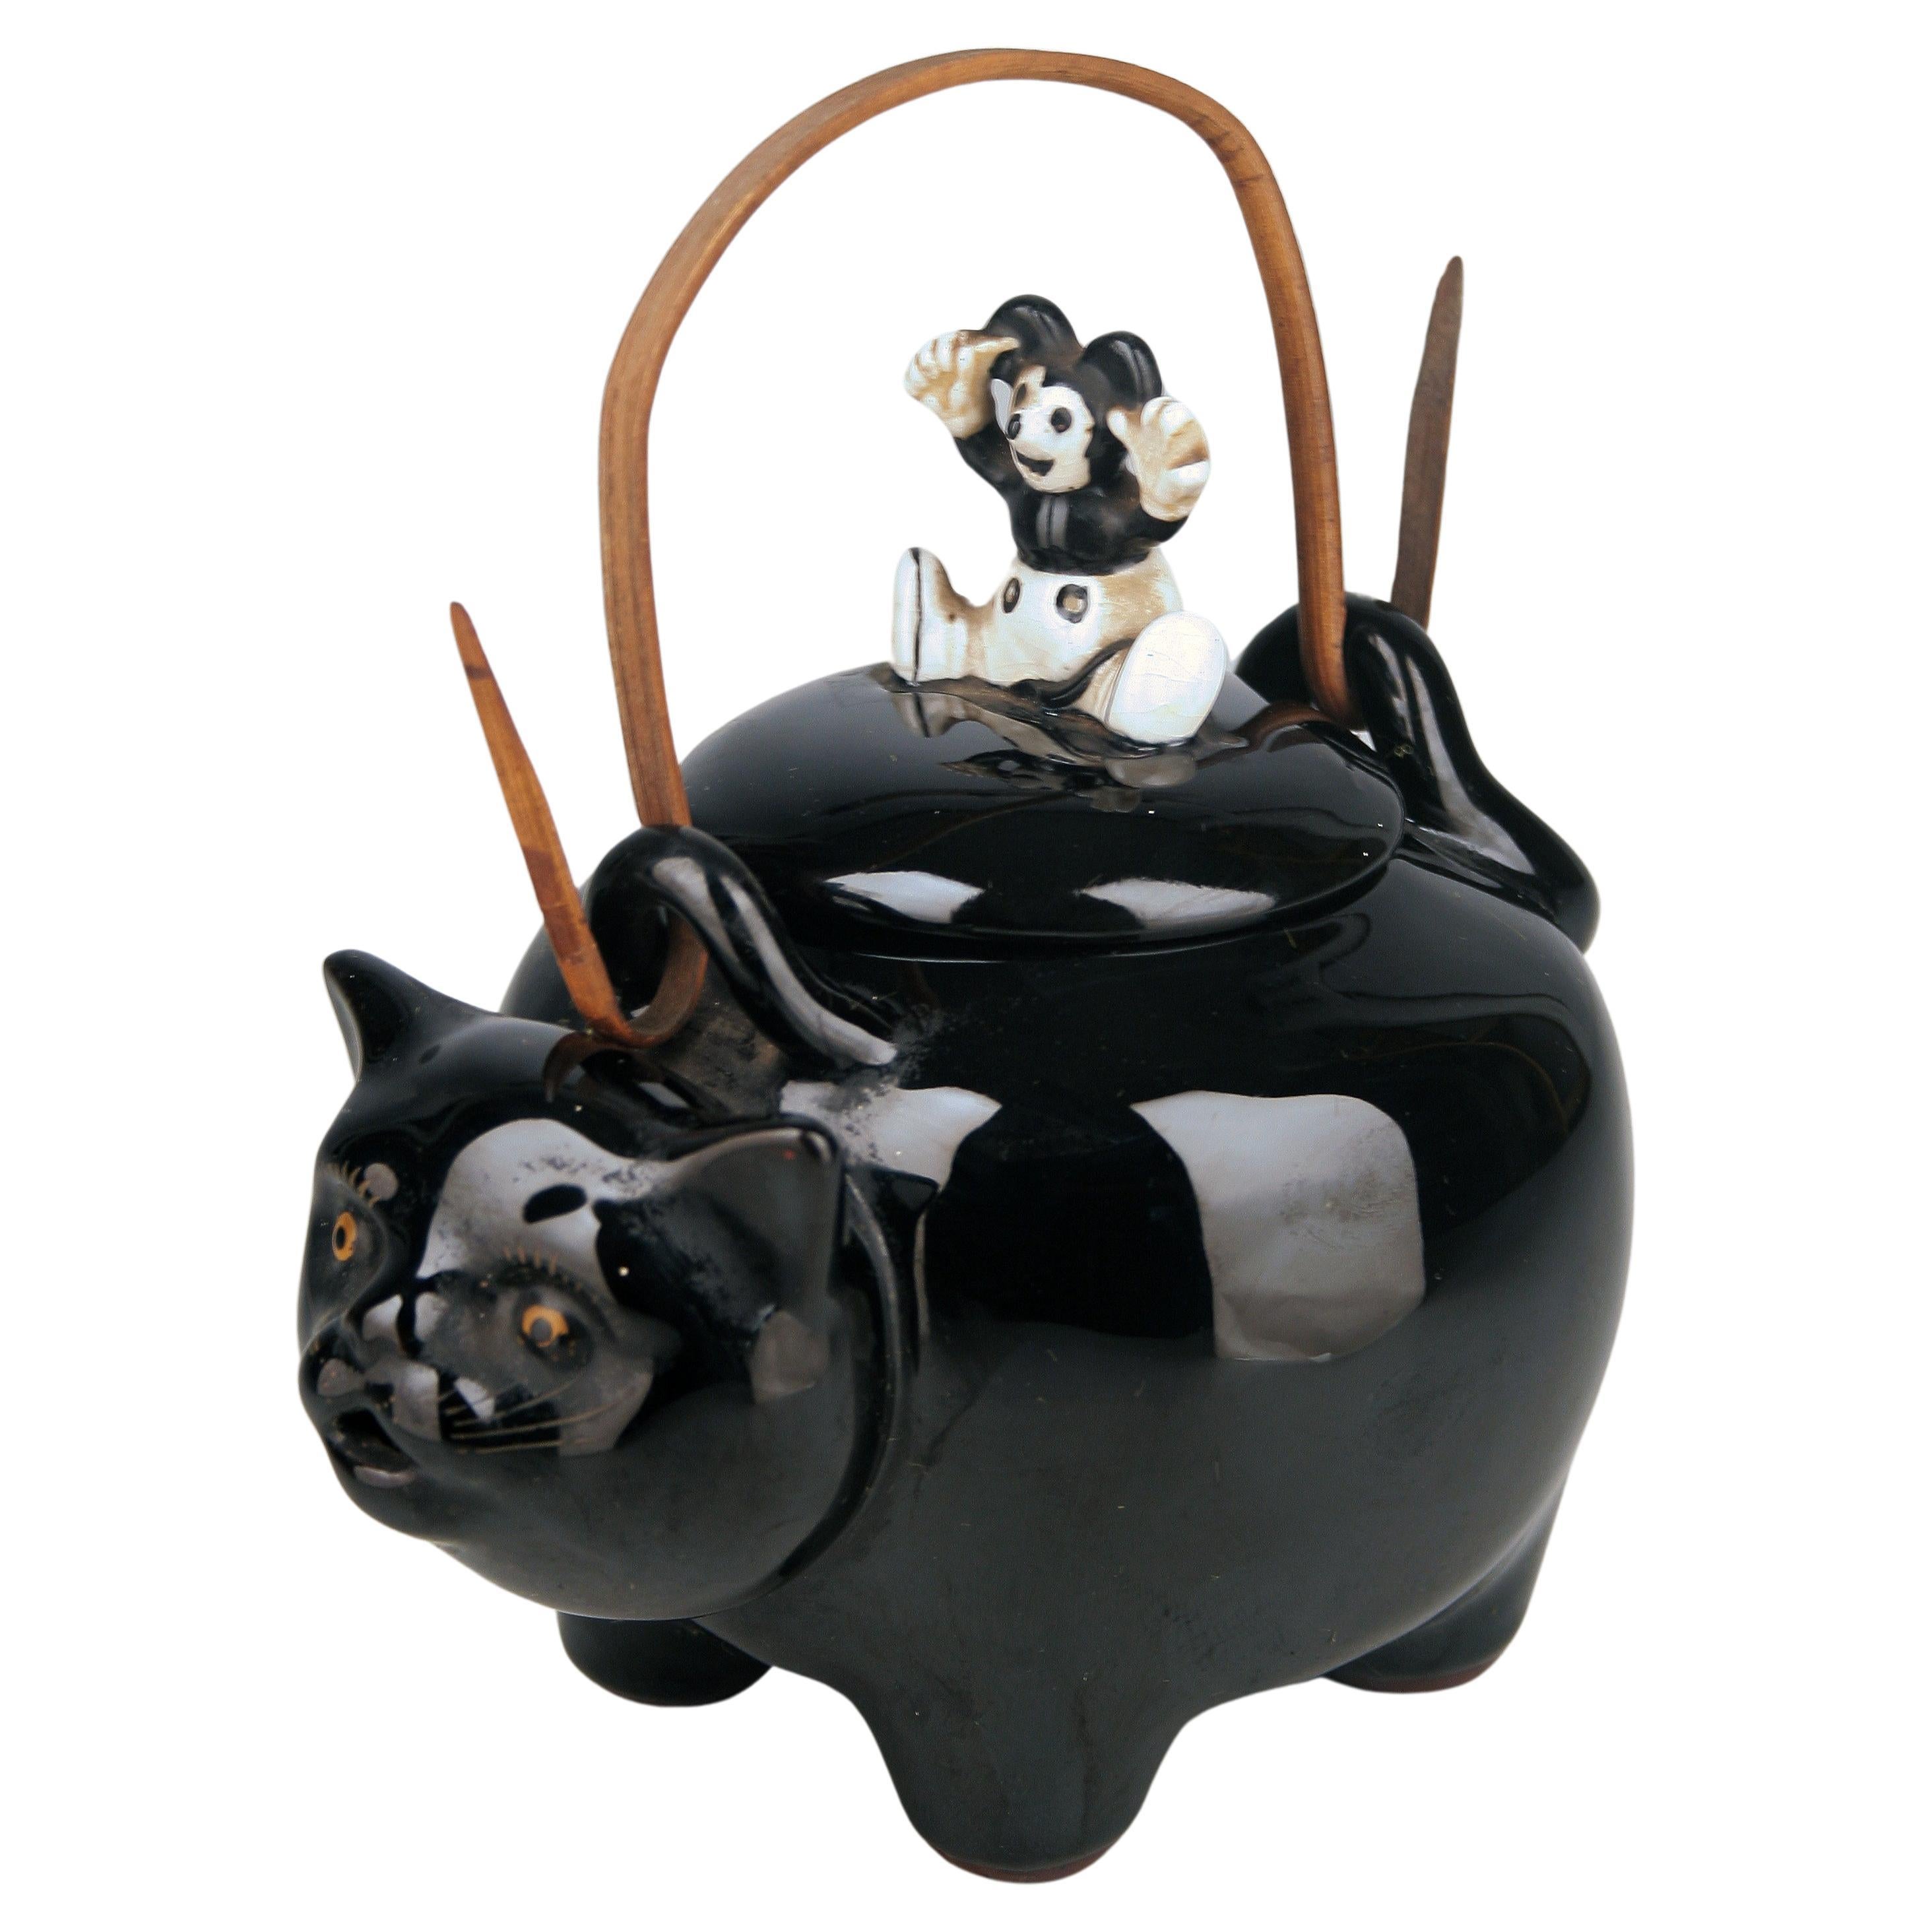 C.C./Shōwa Era Japanese Glazed Porcelain Teapot of Black Cat with Mouse Lid (Théière en porcelaine émaillée japonaise du 20e siècle représentant un chat noir avec un couvercle en forme de souris)